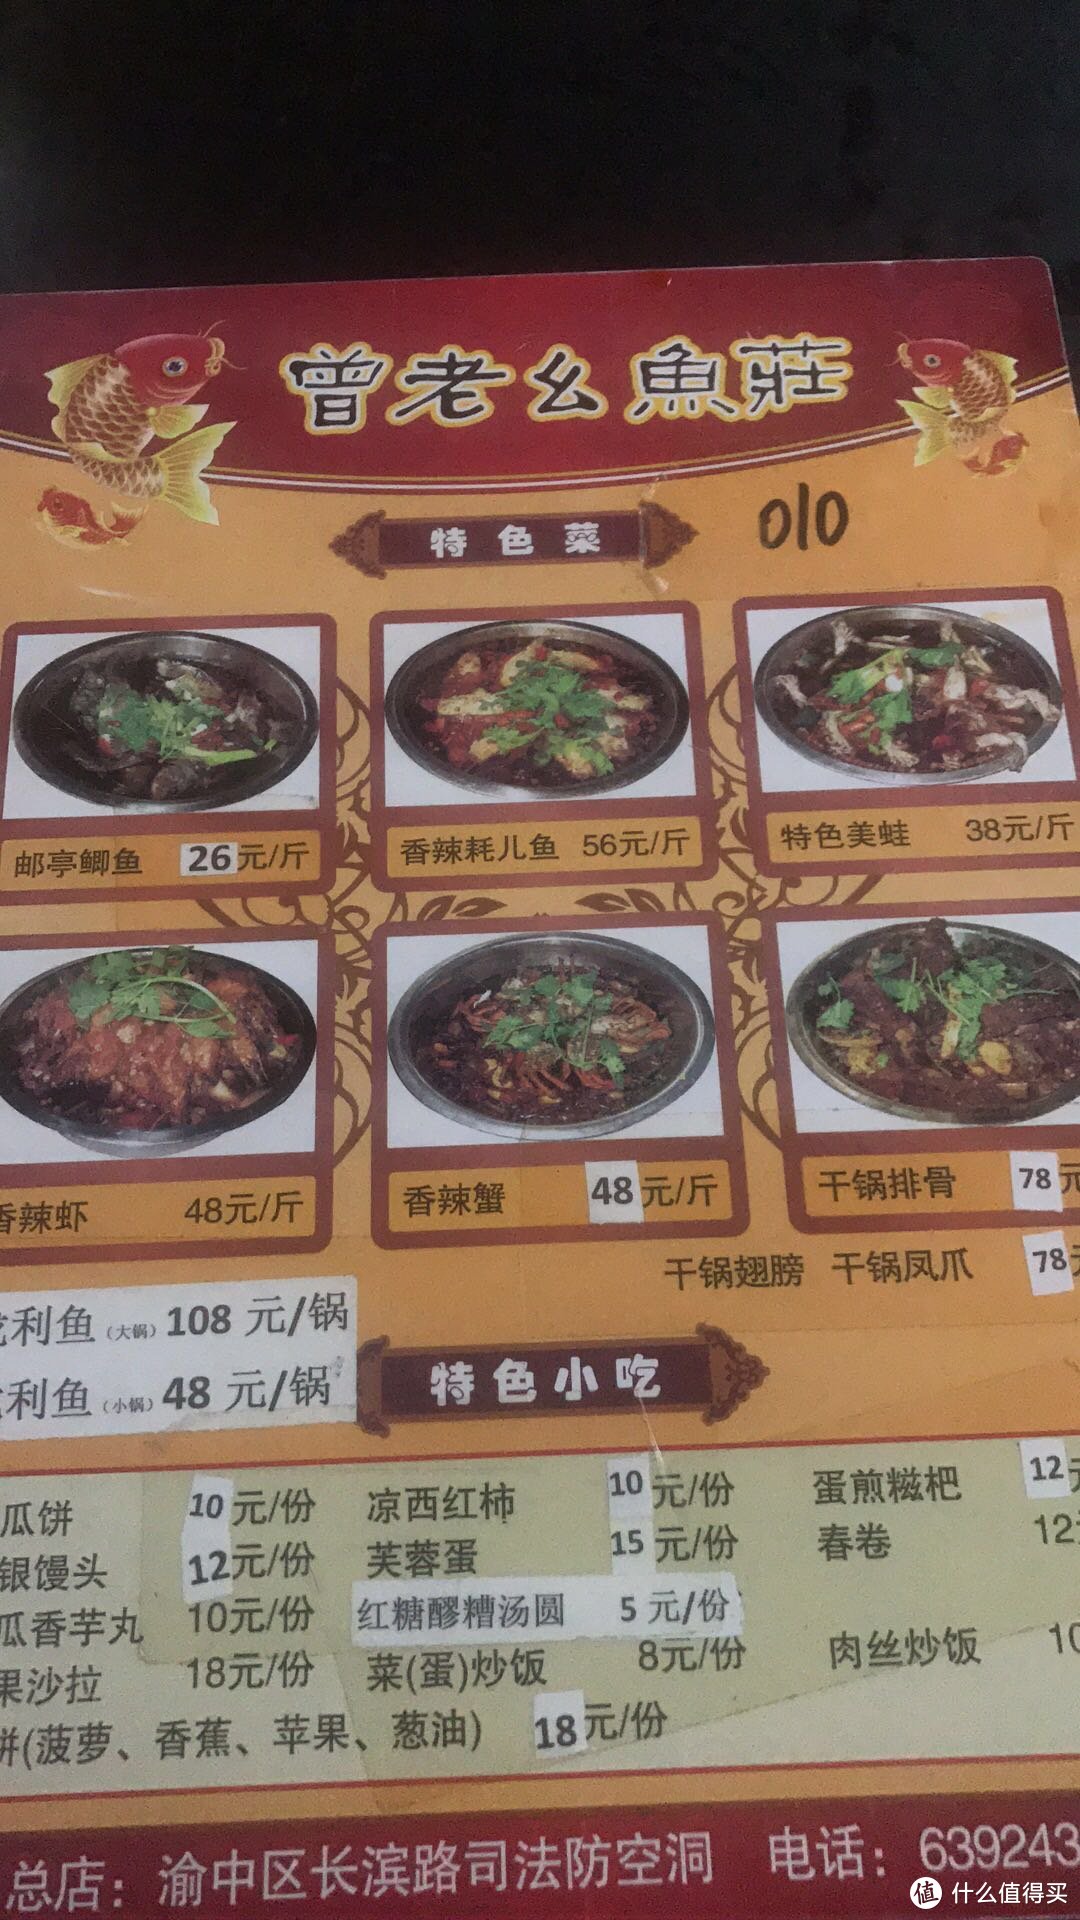 我和重庆人民眼中的微辣差了整整一斤干辣椒